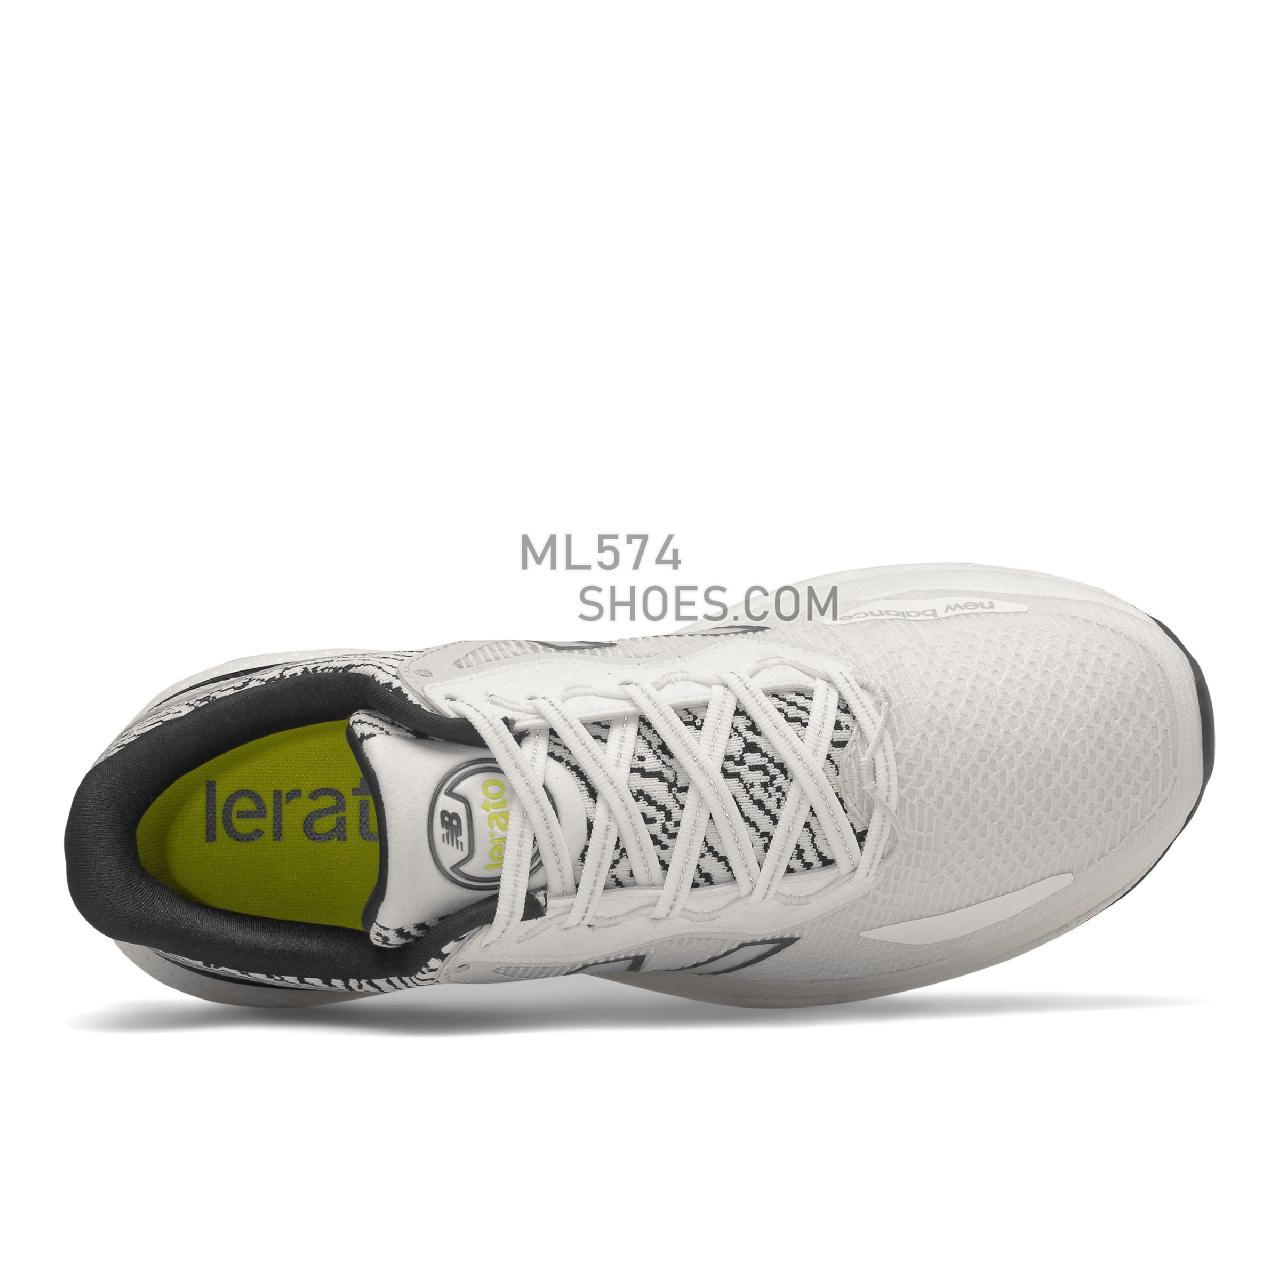 New Balance Lerato - Men's Neutral Running - White with Helium - MLERAWB